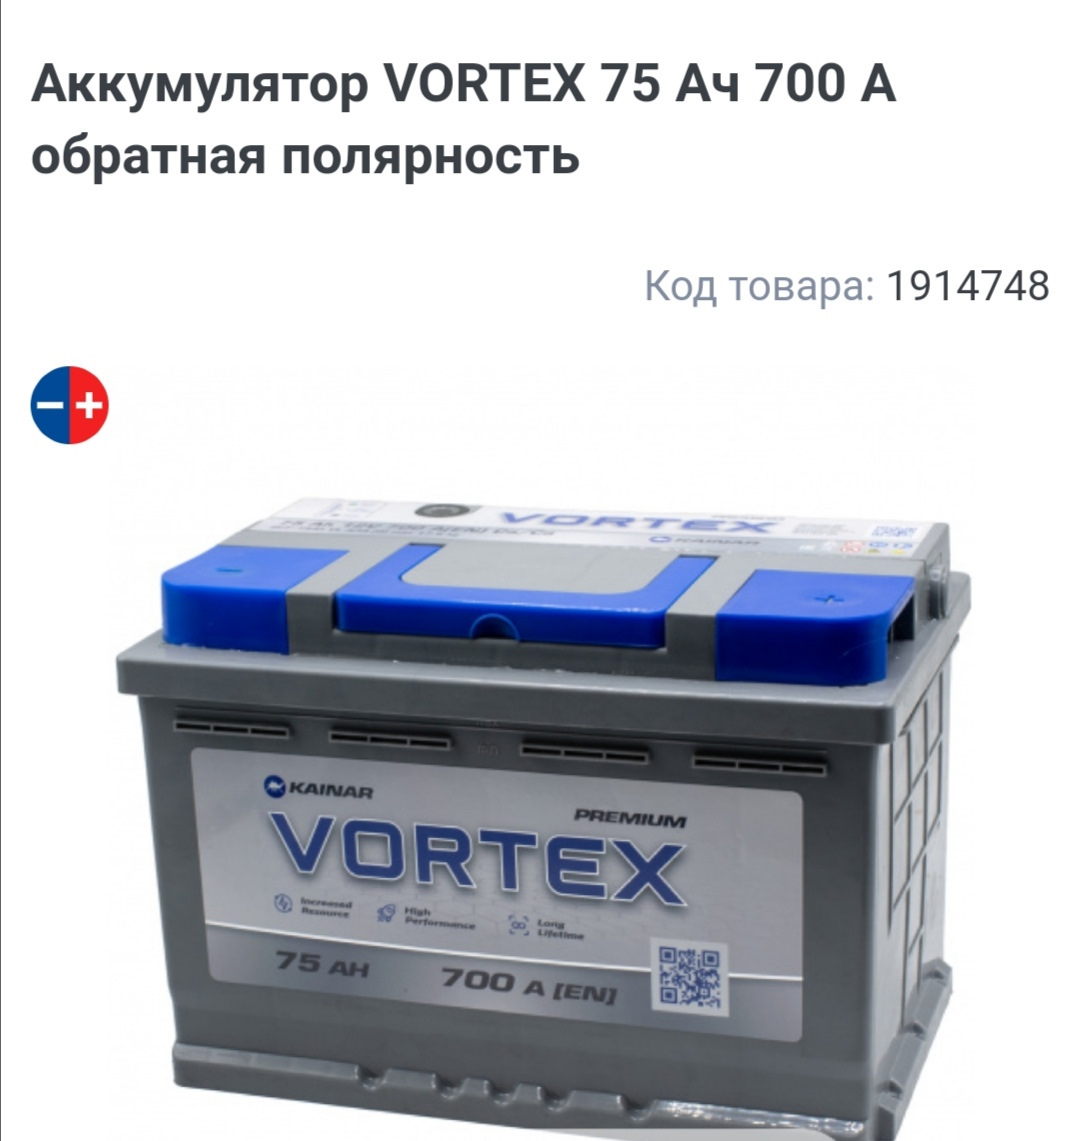 Аккумулятор vortex. АКБ Vortex. Аккумулятор Вортекс. Аккумулятор Вортекс 75. Аккумулятор Вихрь акб12н3.